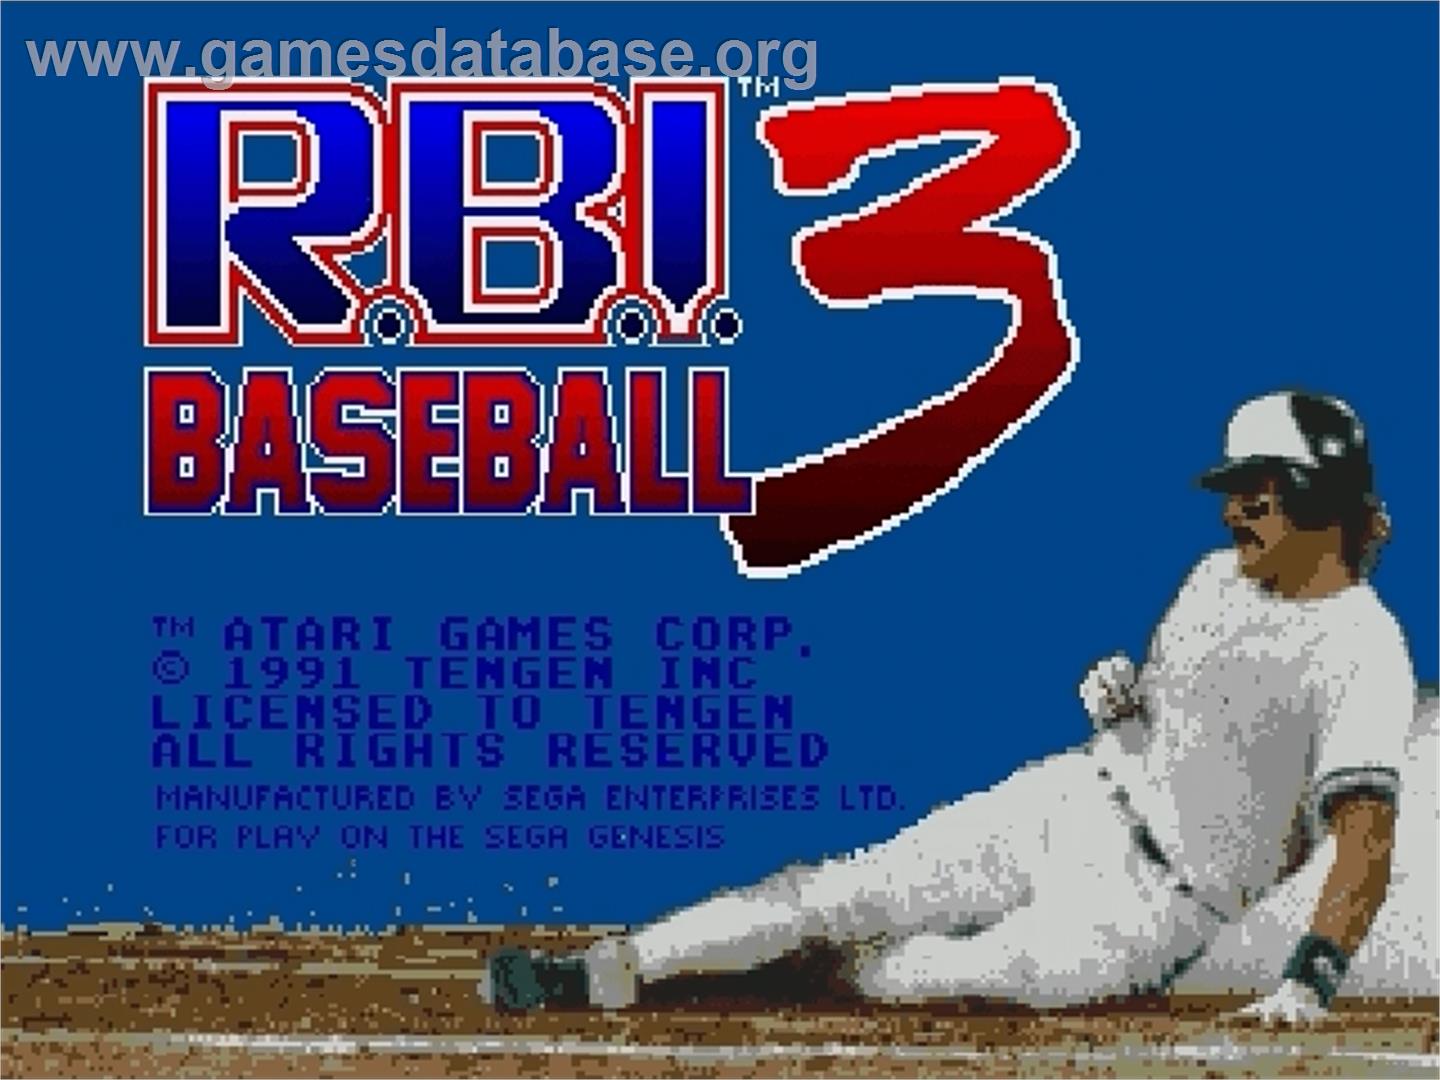 RBI Baseball 3 - Sega Genesis - Artwork - Title Screen